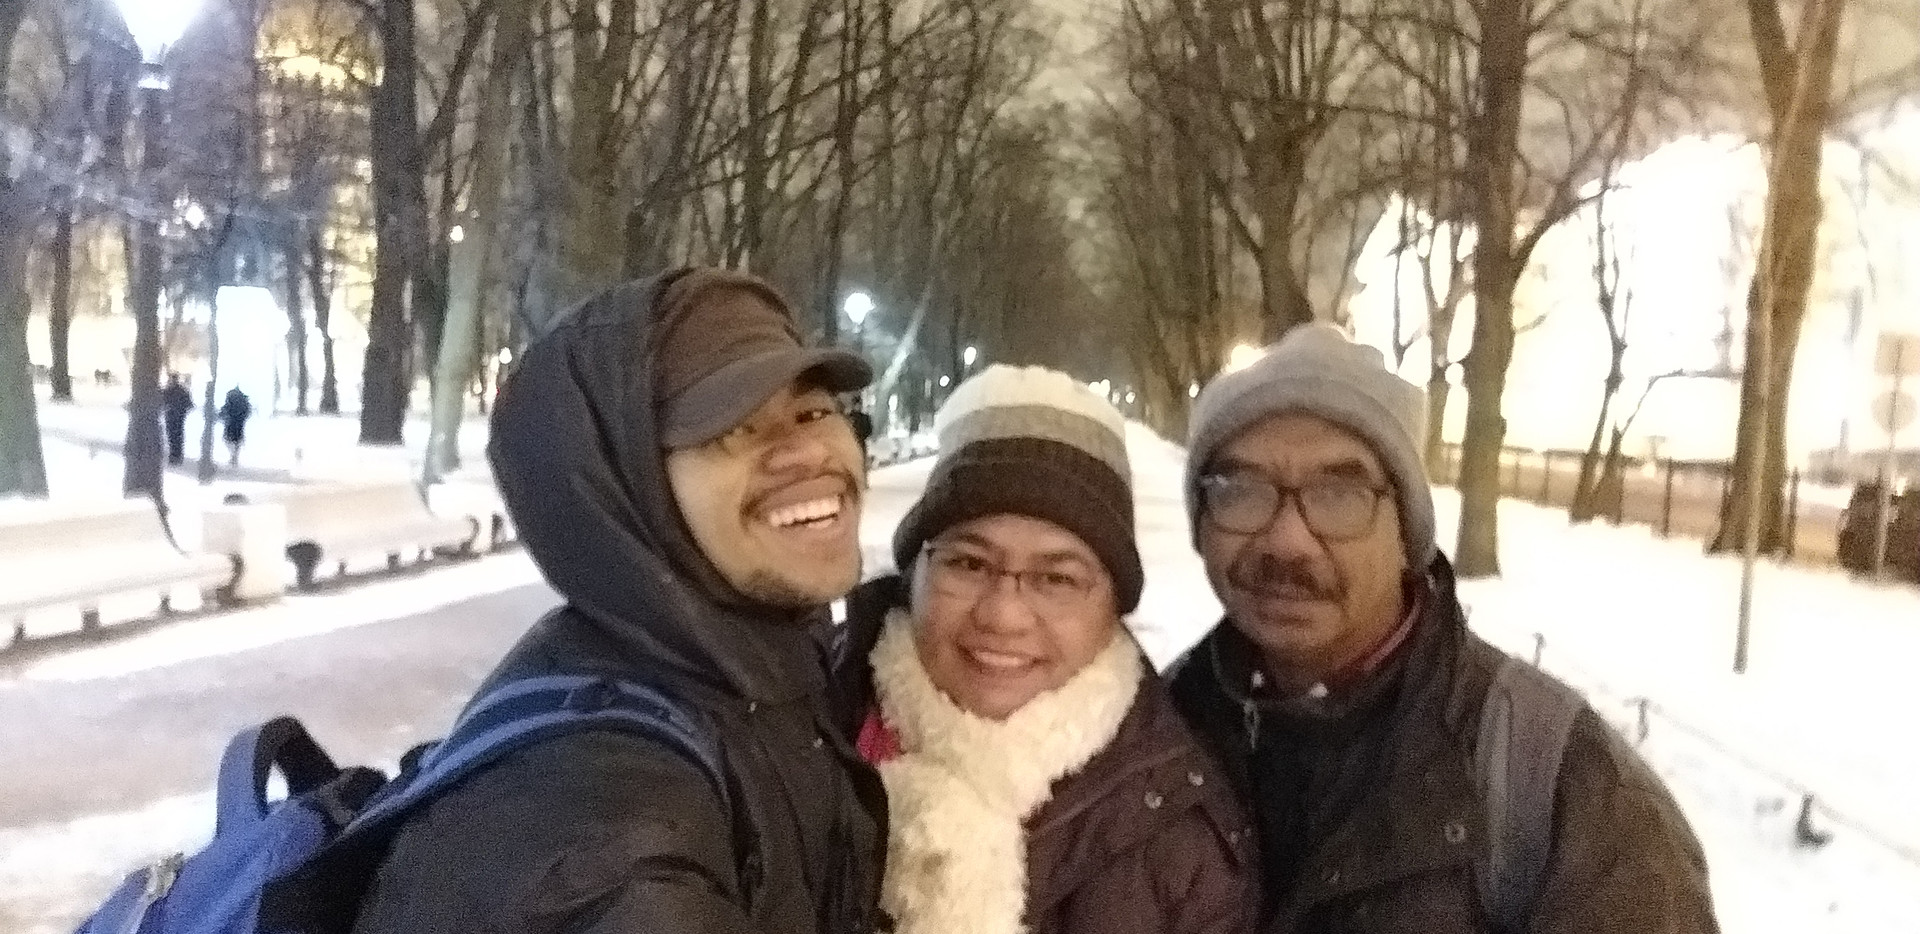 Ferlito berfoto bersama kedua orang tuanya saat berlibur ke Sankt Peterburg, Rusia, 15 Desember 2018.